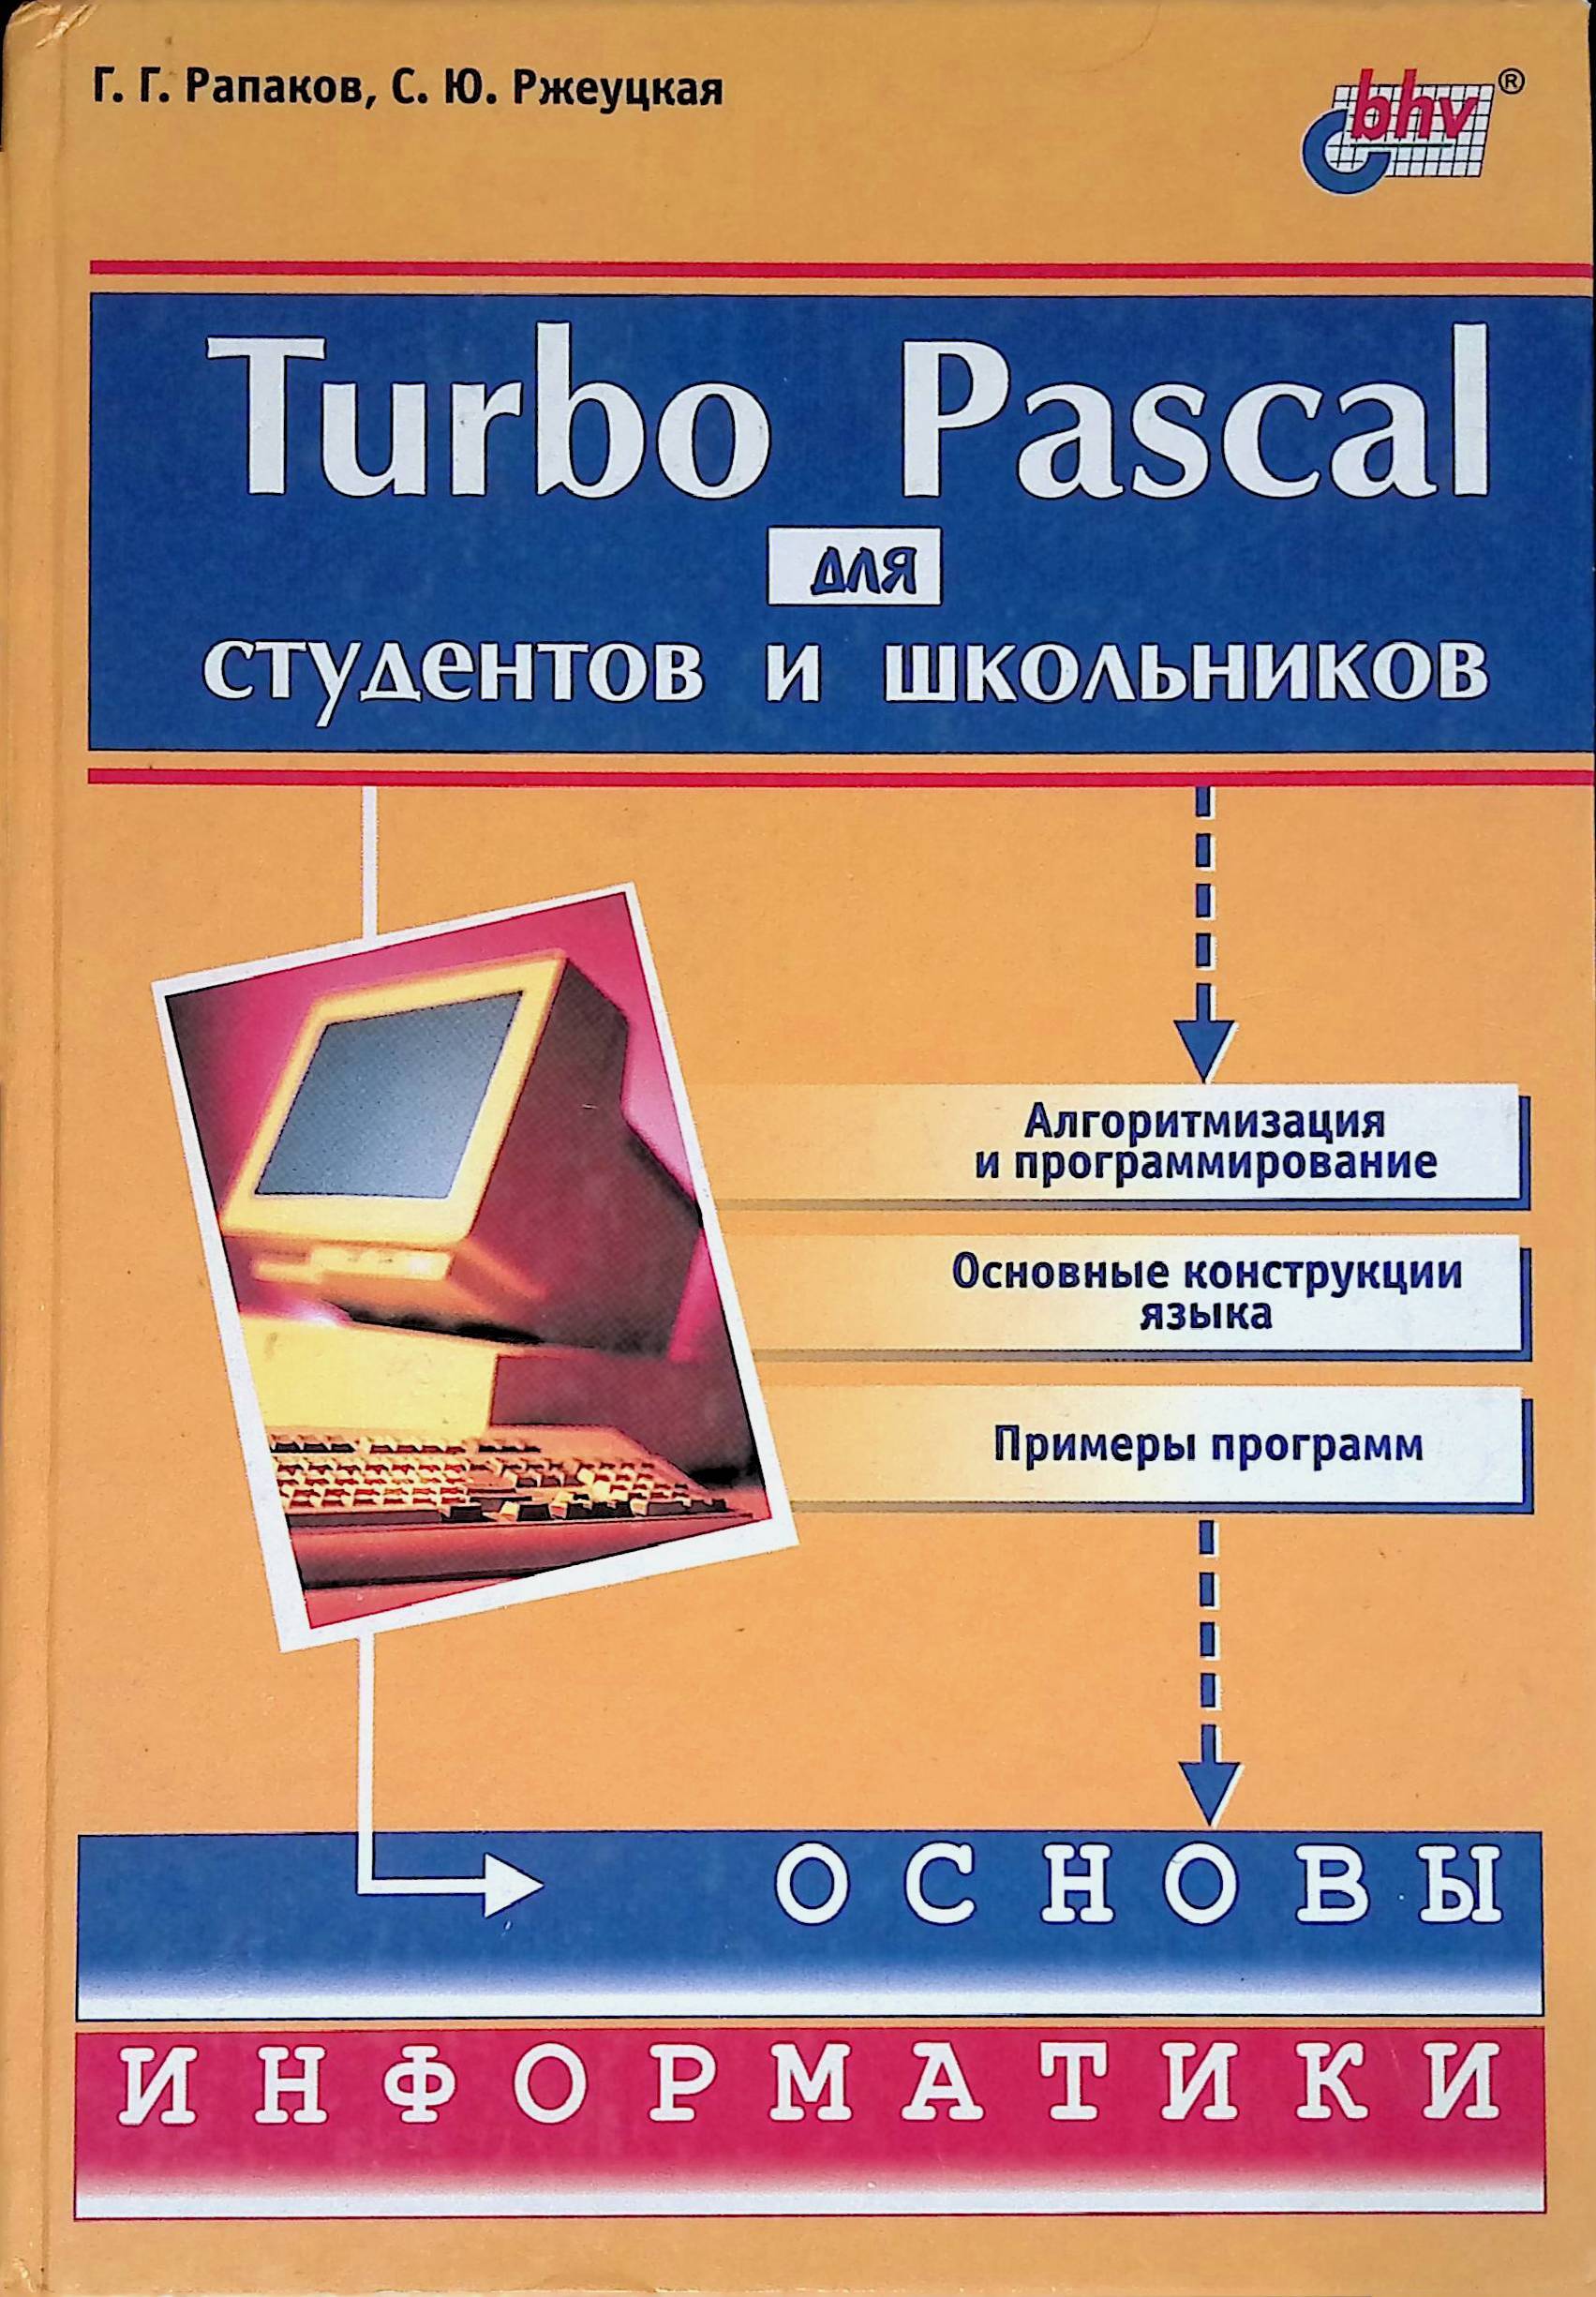 Книги про программирование. Turbo Pascal книга. Turbo Pascal для школьников. Учебное пособие.. Паскаль для школьников. Паскаль (язык программирования).